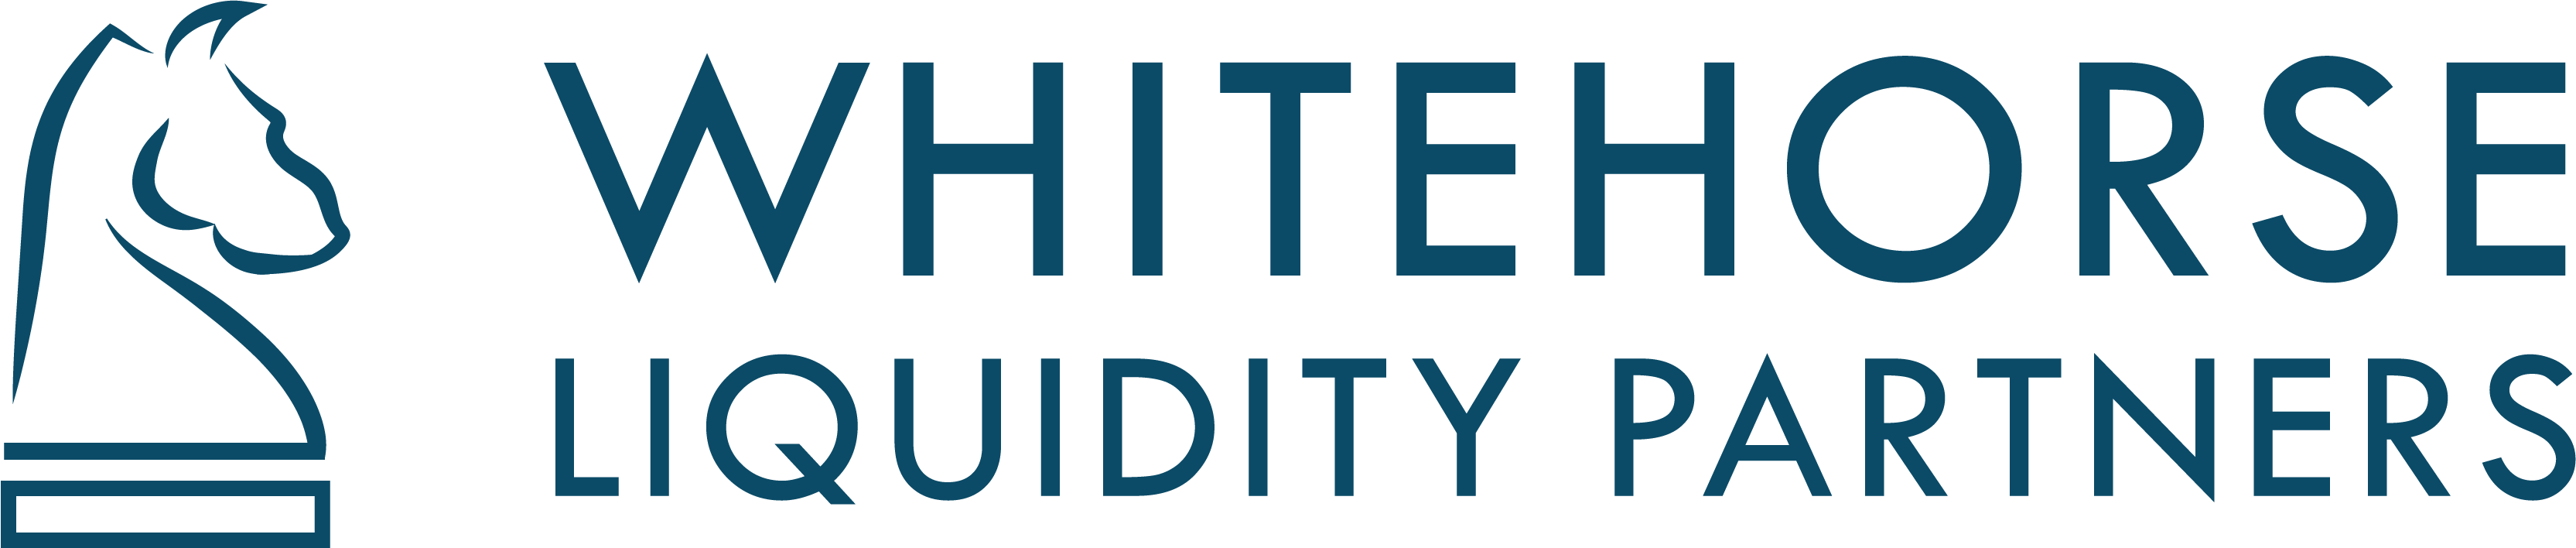 whitehorse liquidity partners